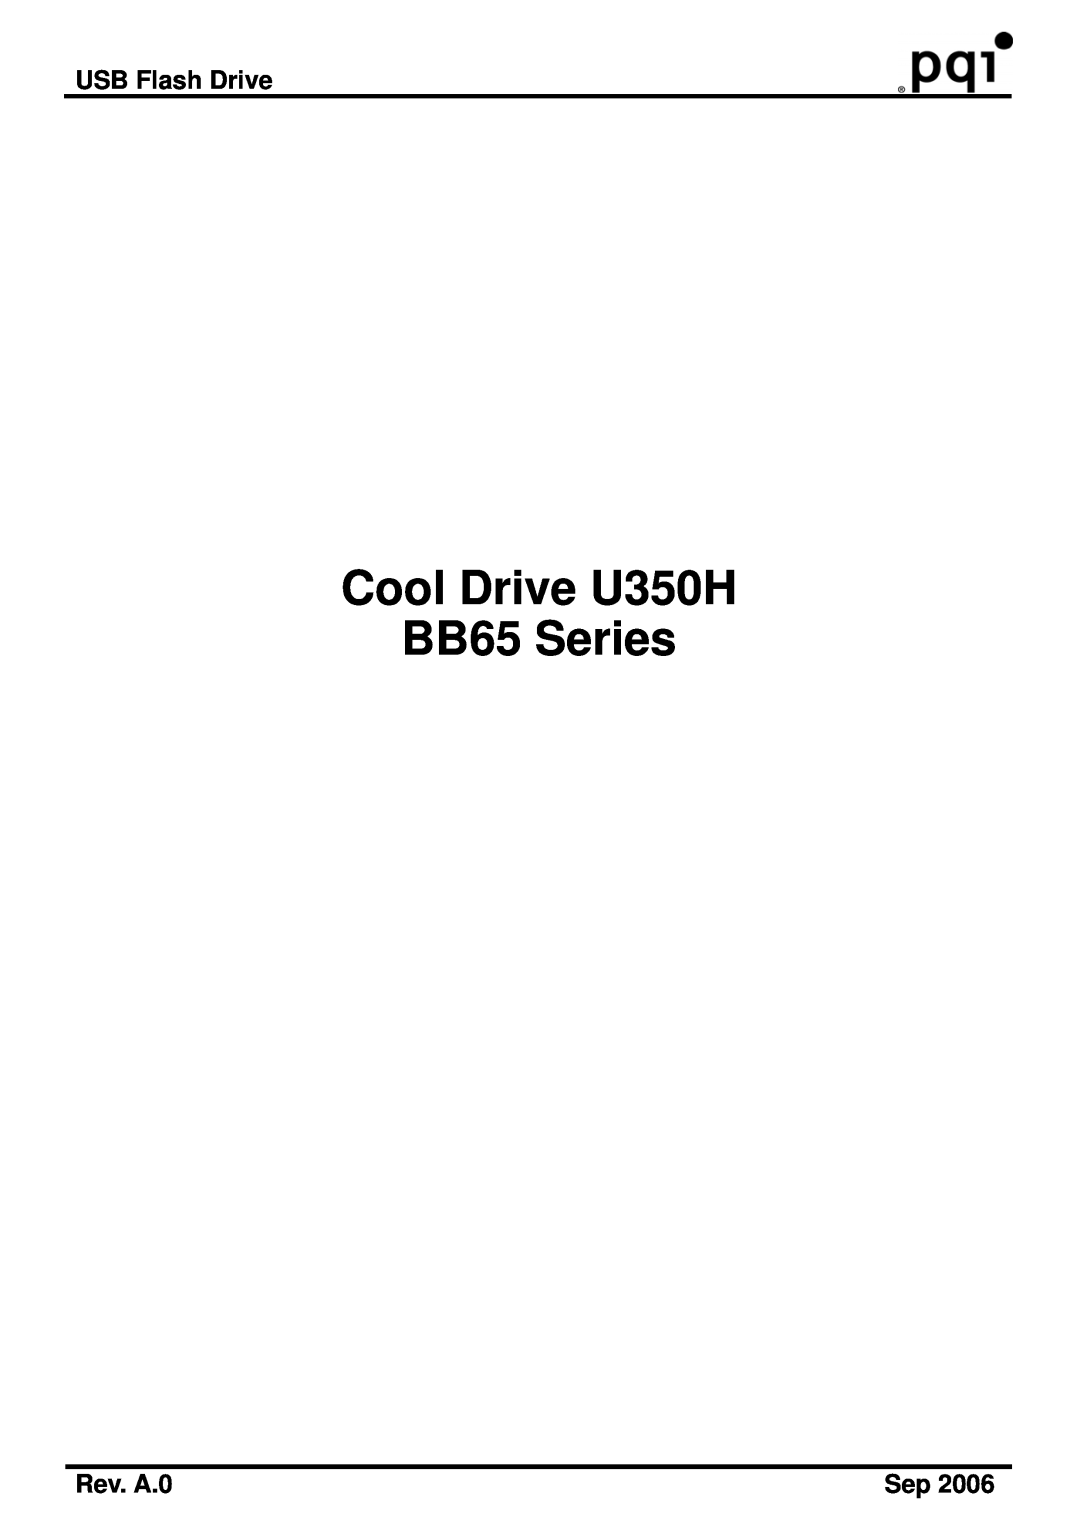 PQI manual USB Flash Drive, Rev. A.0, Cool Drive U350H BB65 Series 